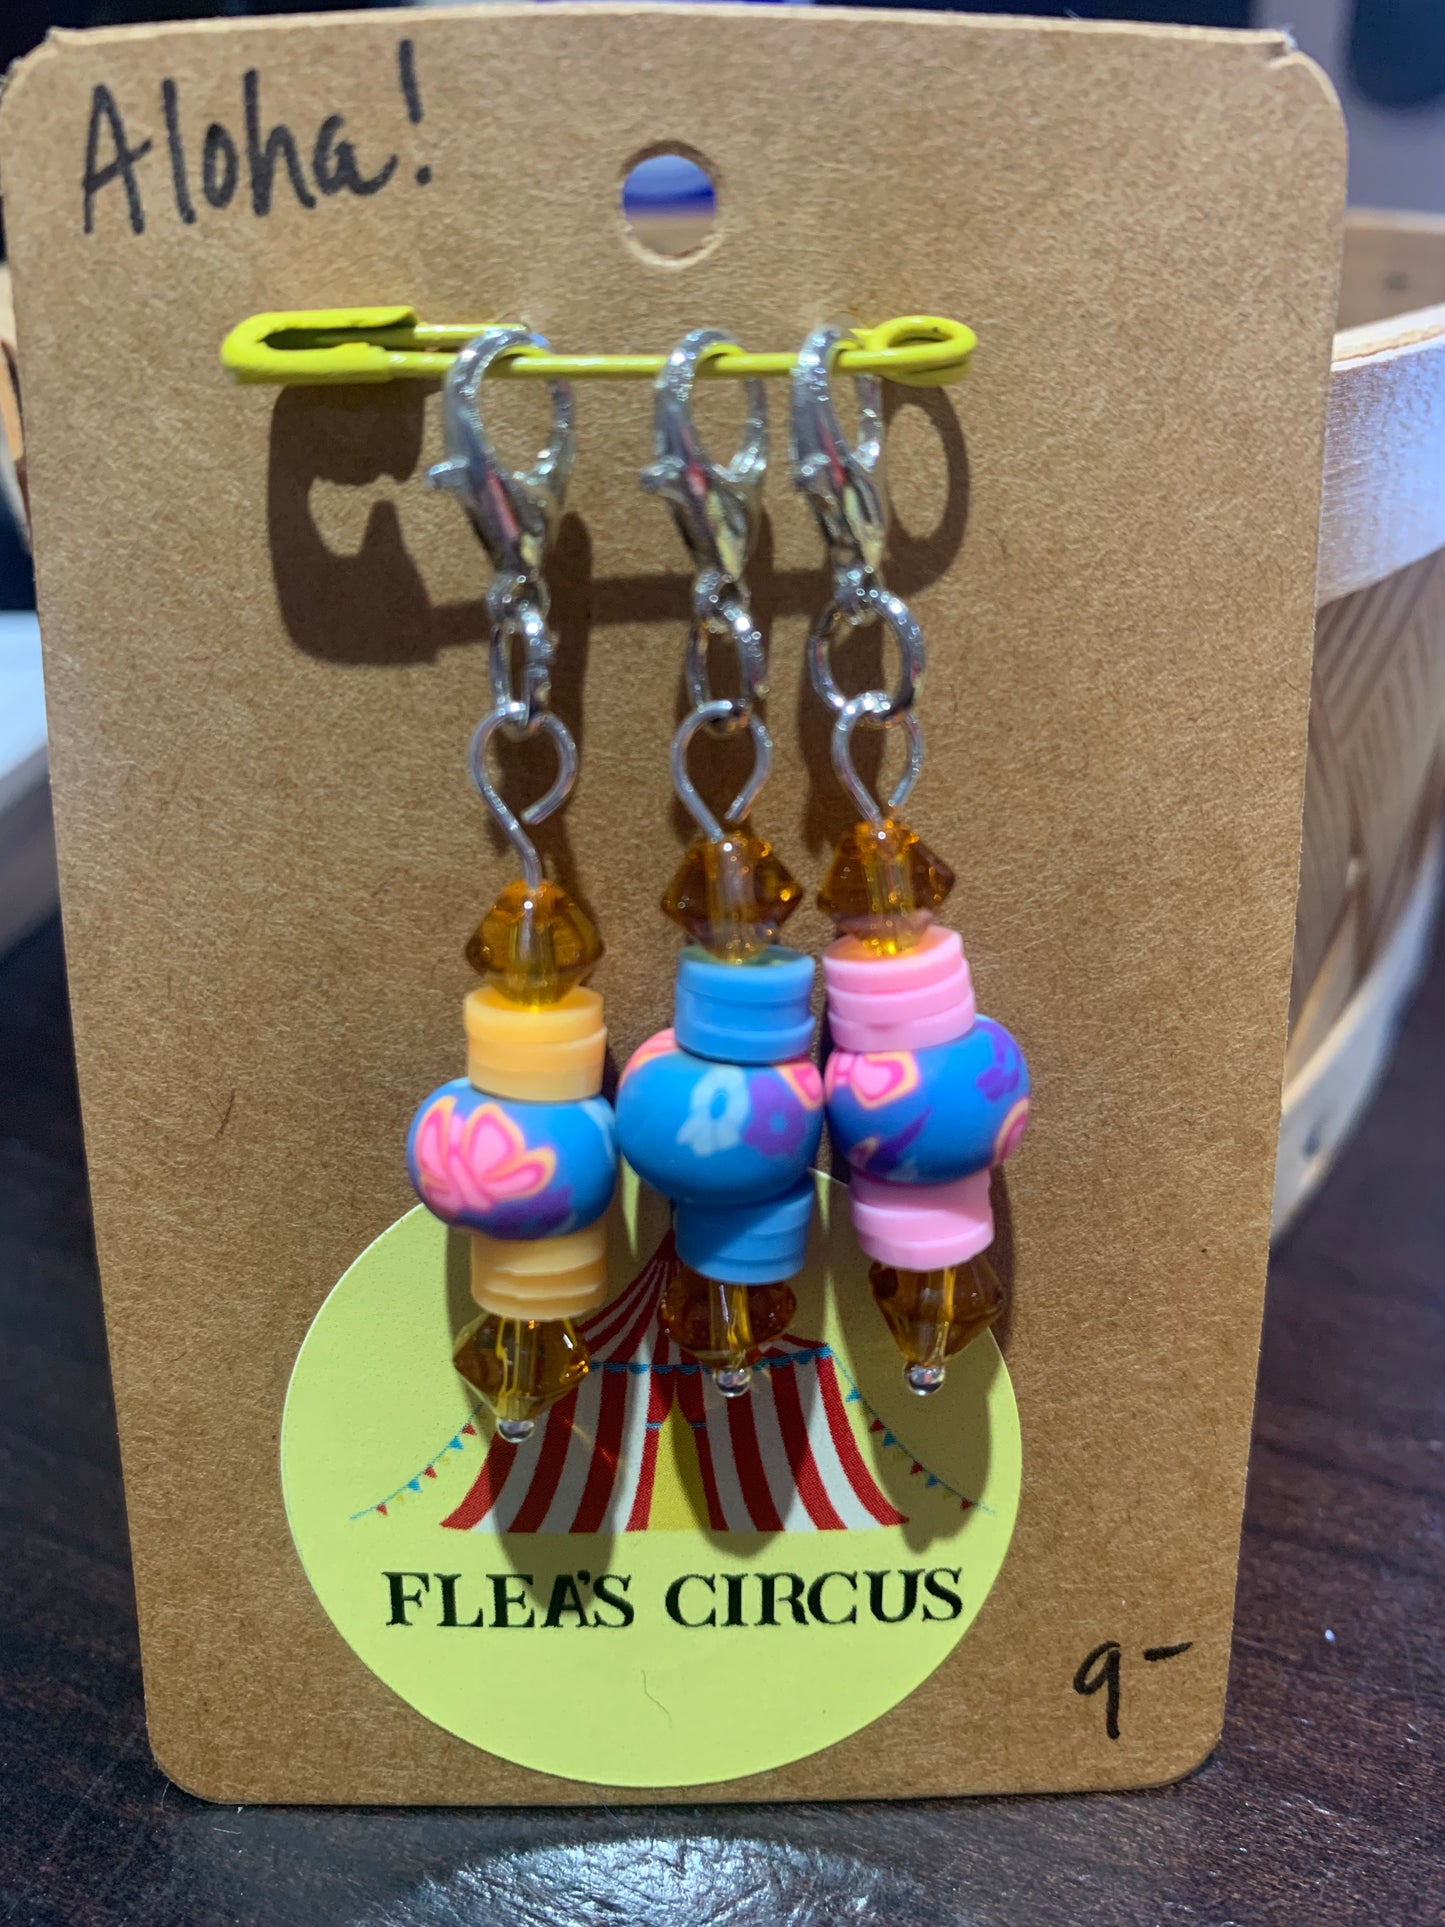 Flea's Circus Stitch Markers - Small